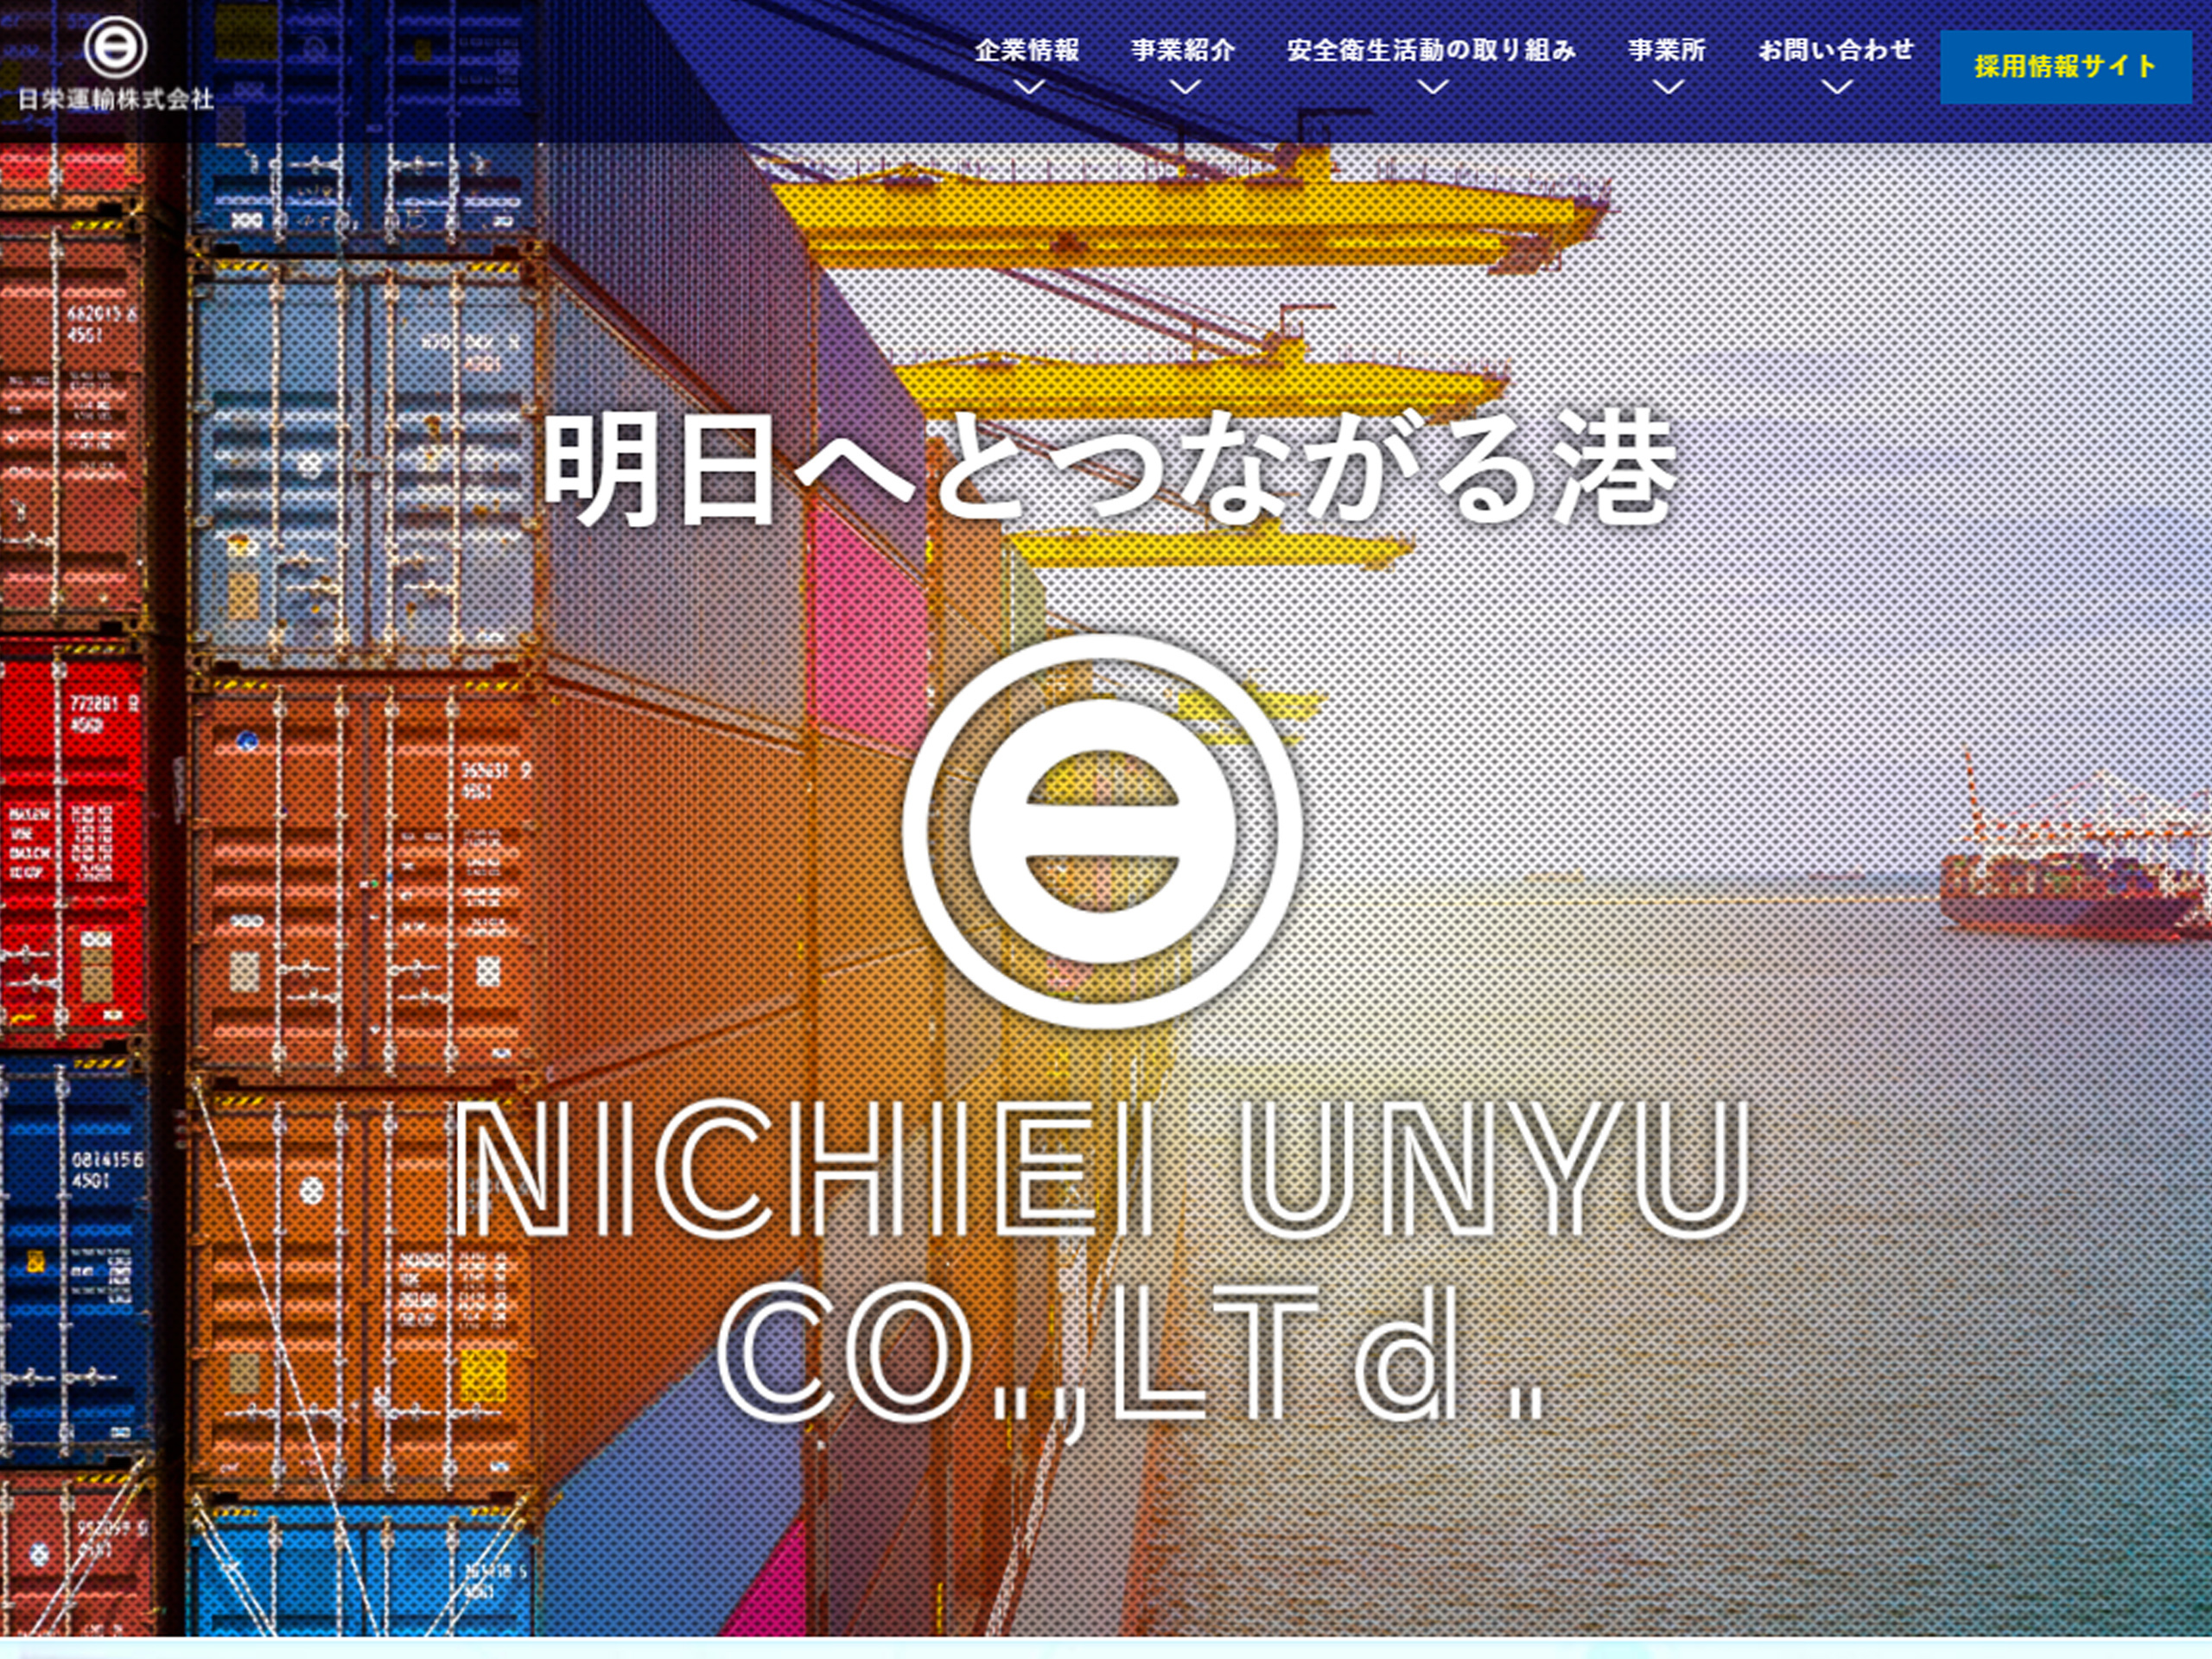 日栄運輸株式会社のホームページを開設いたしました。